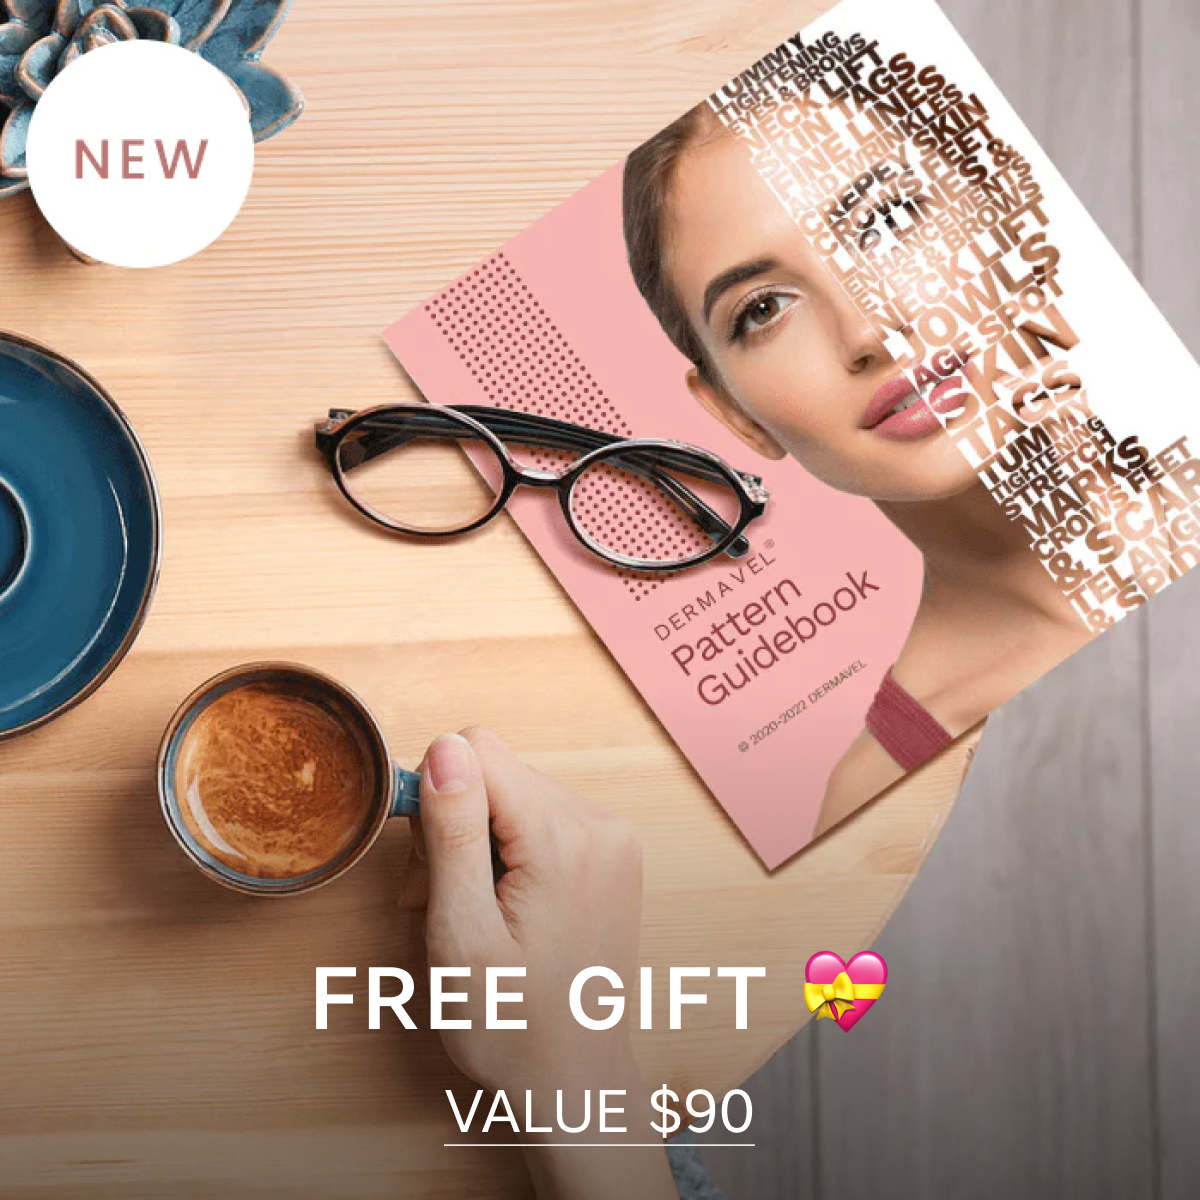 Bundle Deal: Ultimate Beauty Spa Kit (25x) + Repair Pack (2040 pcs) + Free Guidebook